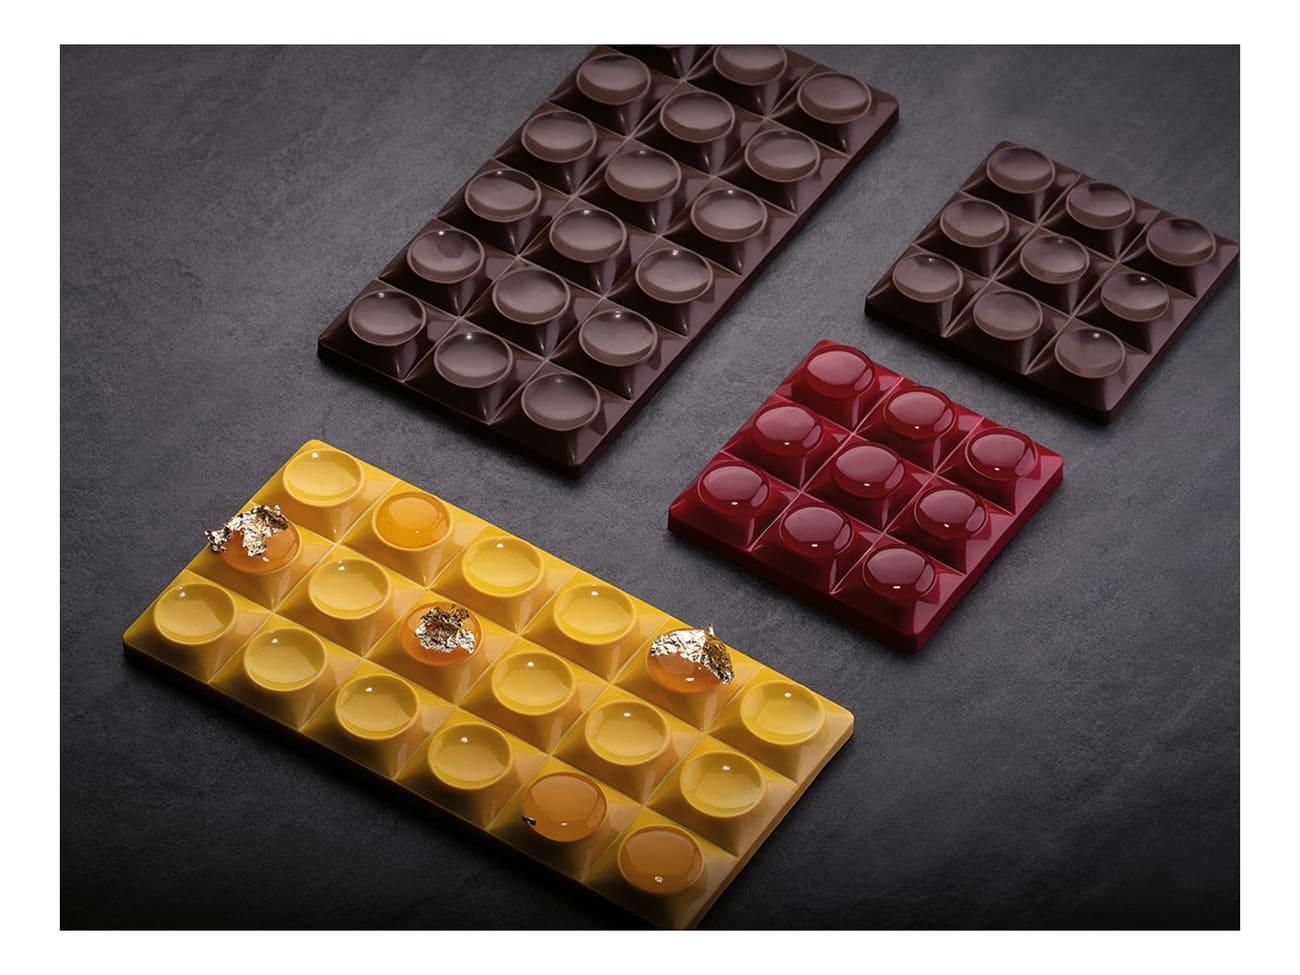 Moule chocolat - Bricks - 3 tablettes - Pavoni - Meilleur du Chef